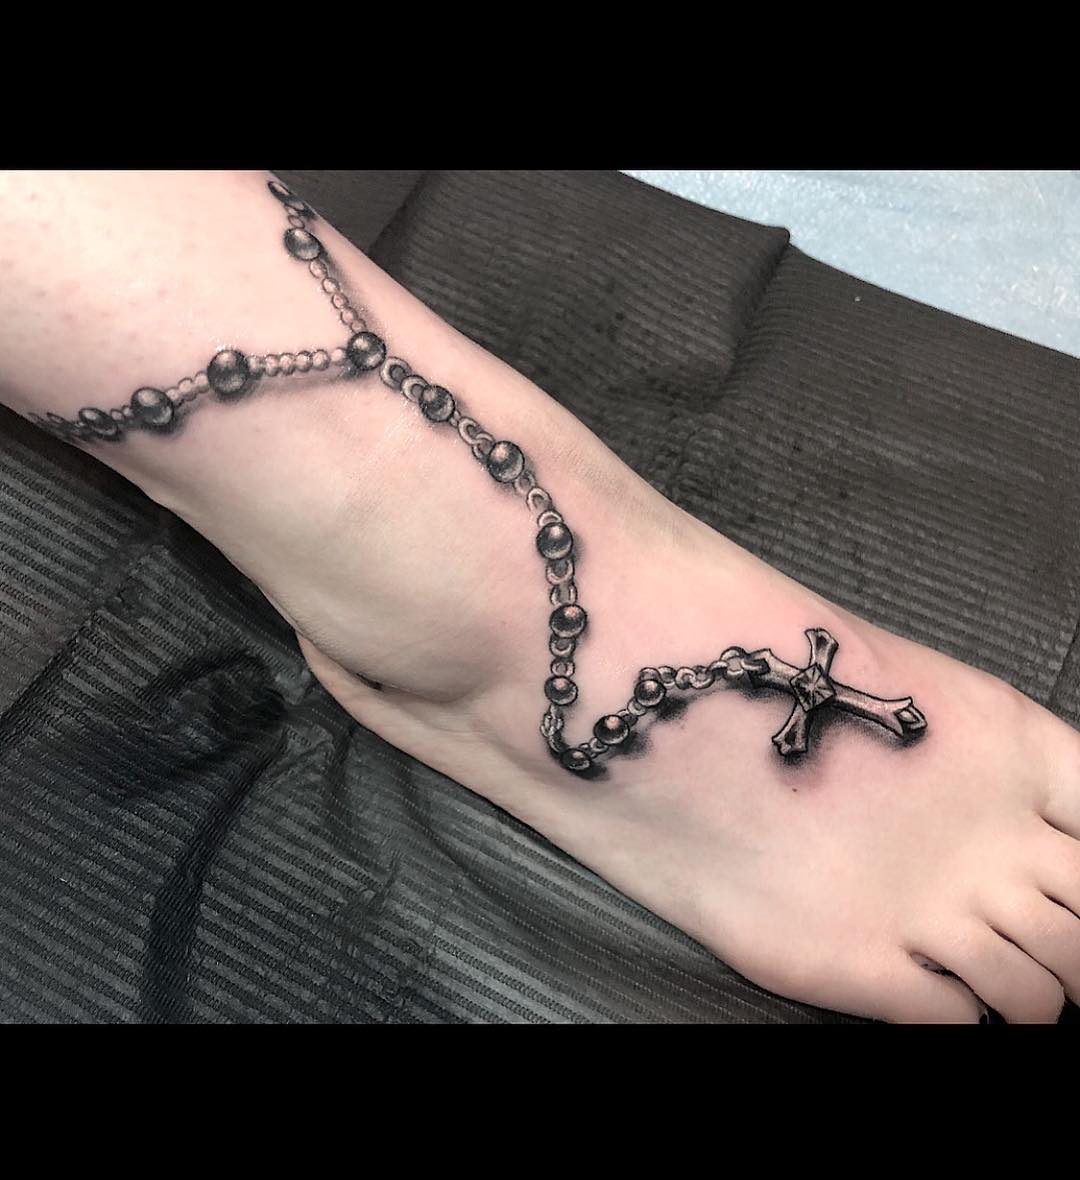 tatuaggio piede rosario by @jorge tat2